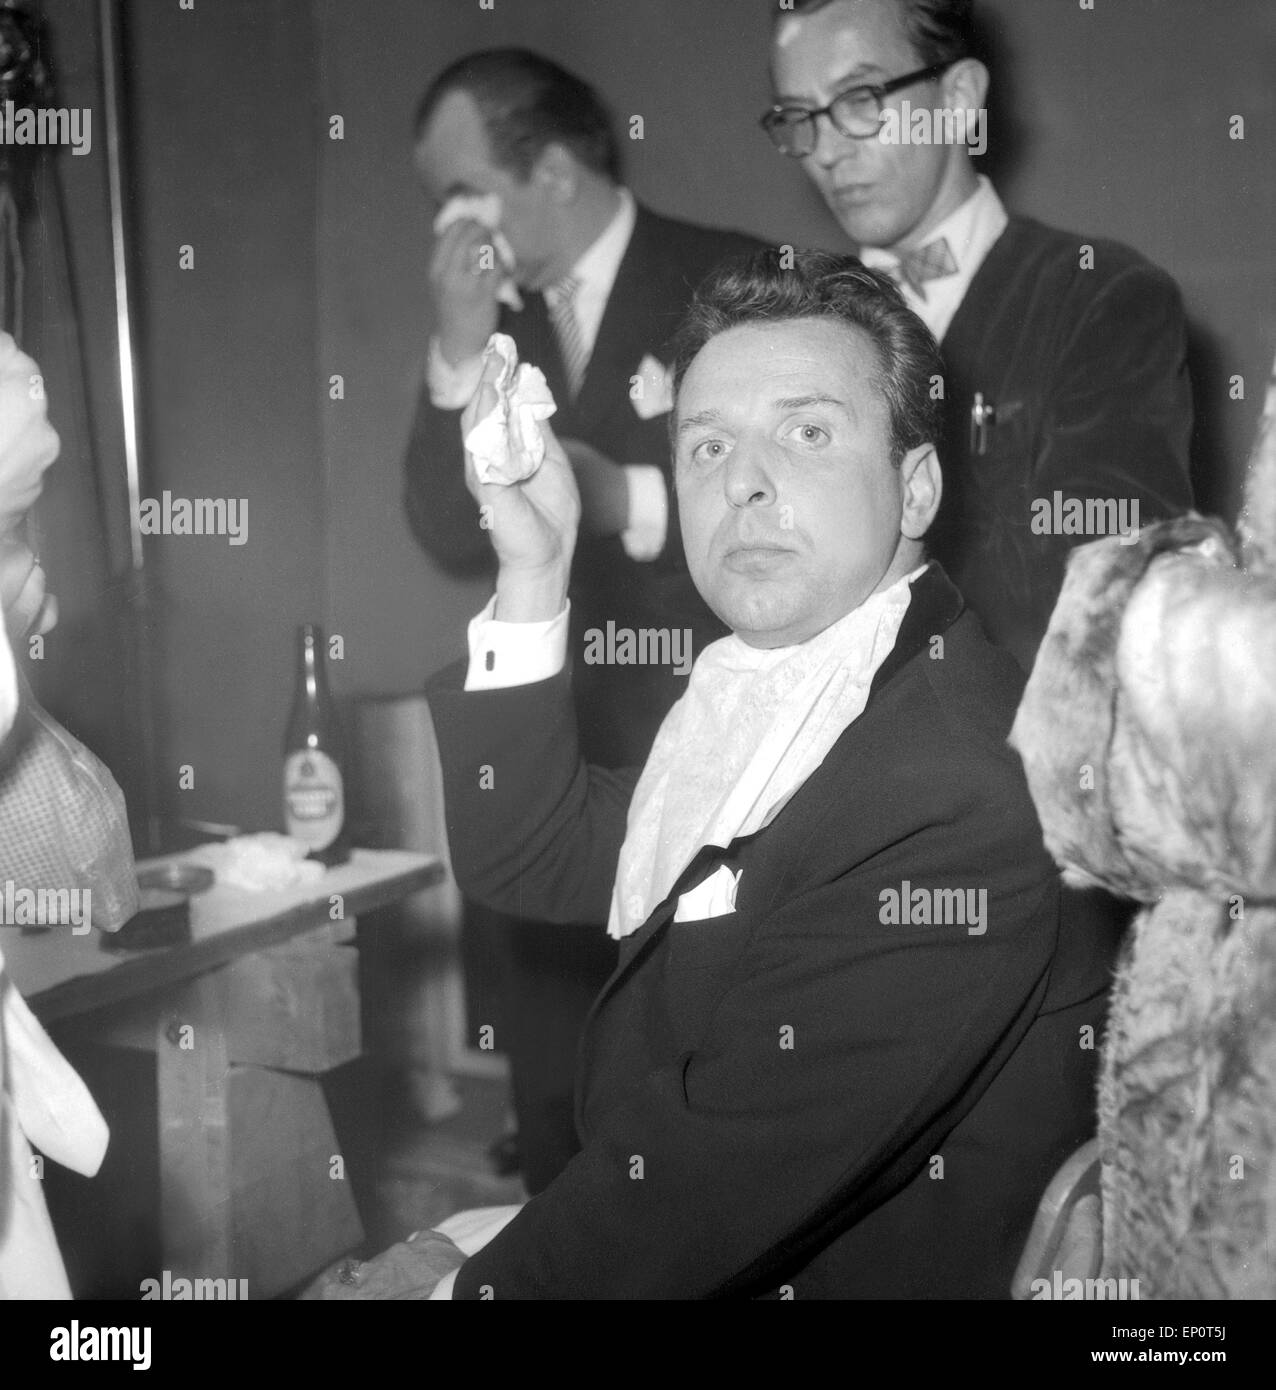 Deutscher Wis Georg Thomalla in der Garderobe bei der NWDR-Fernsehshow 'Die große Chance', Hamburg 1956. Deutsche acto Stockfoto